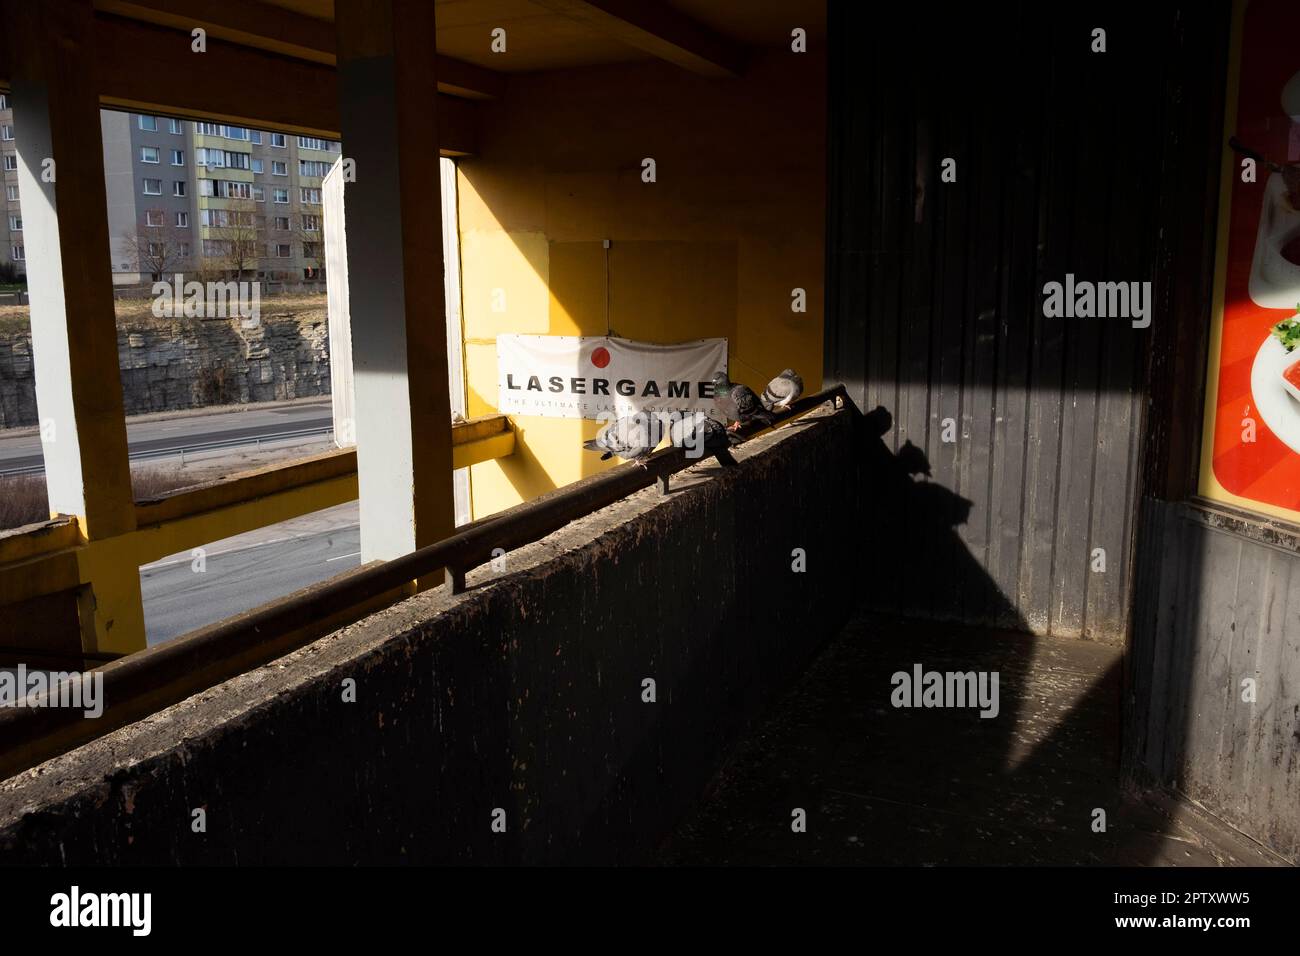 Tauben auf dem Balkon im Stadtteil Lasnamäe in Tallinn, Estland. Dies ist ein ärmeres Gebiet von Tallinn mit einer überwiegend russischen Bevölkerung, die sich verändert hat Stockfoto